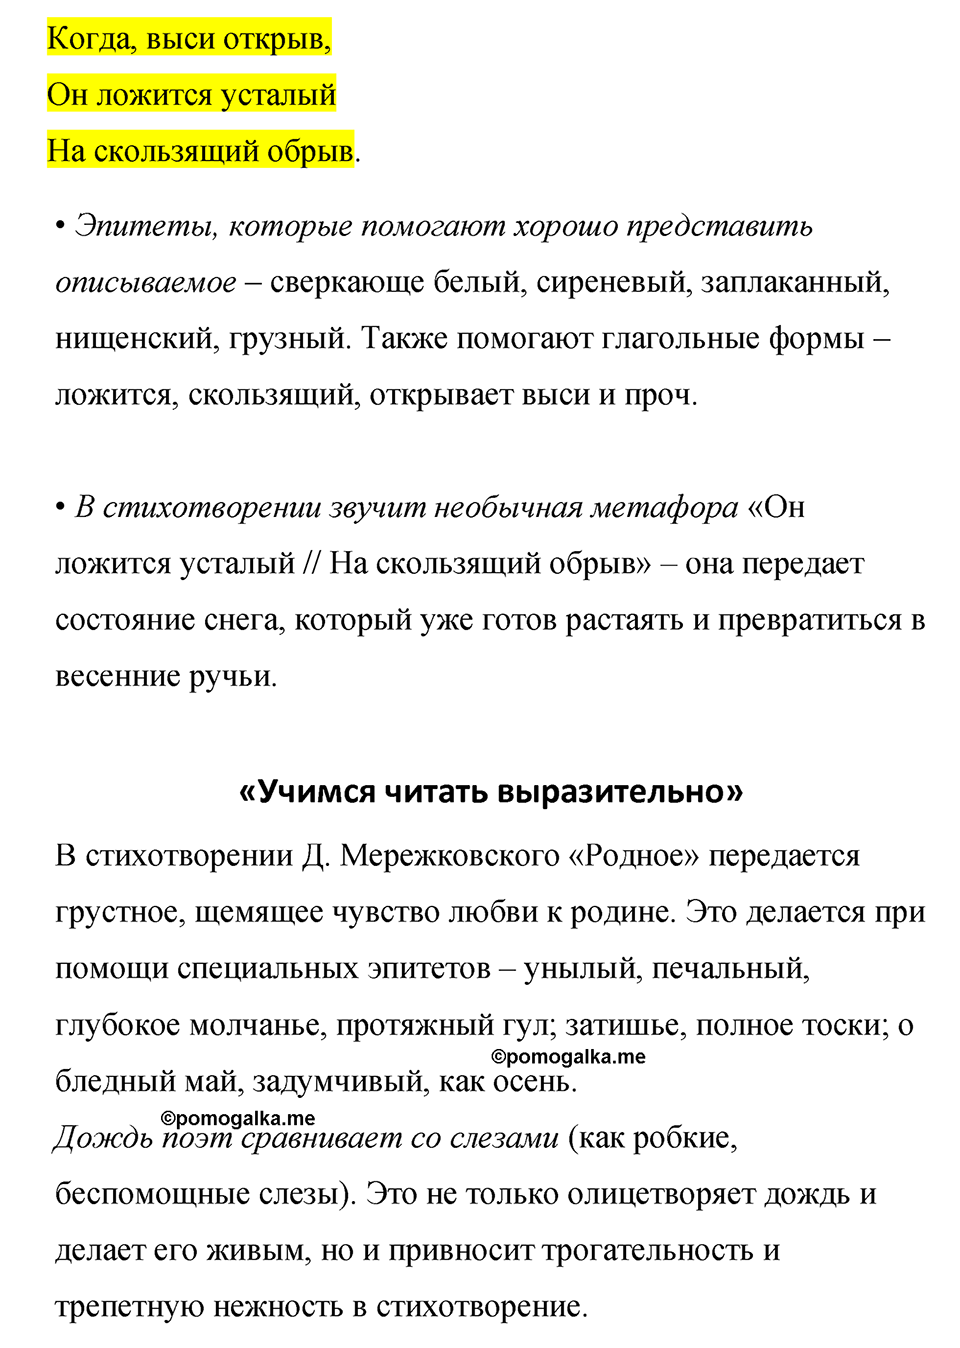 часть 2 страница 186 литература 8 класс Коровина, Журавлев 2022 год